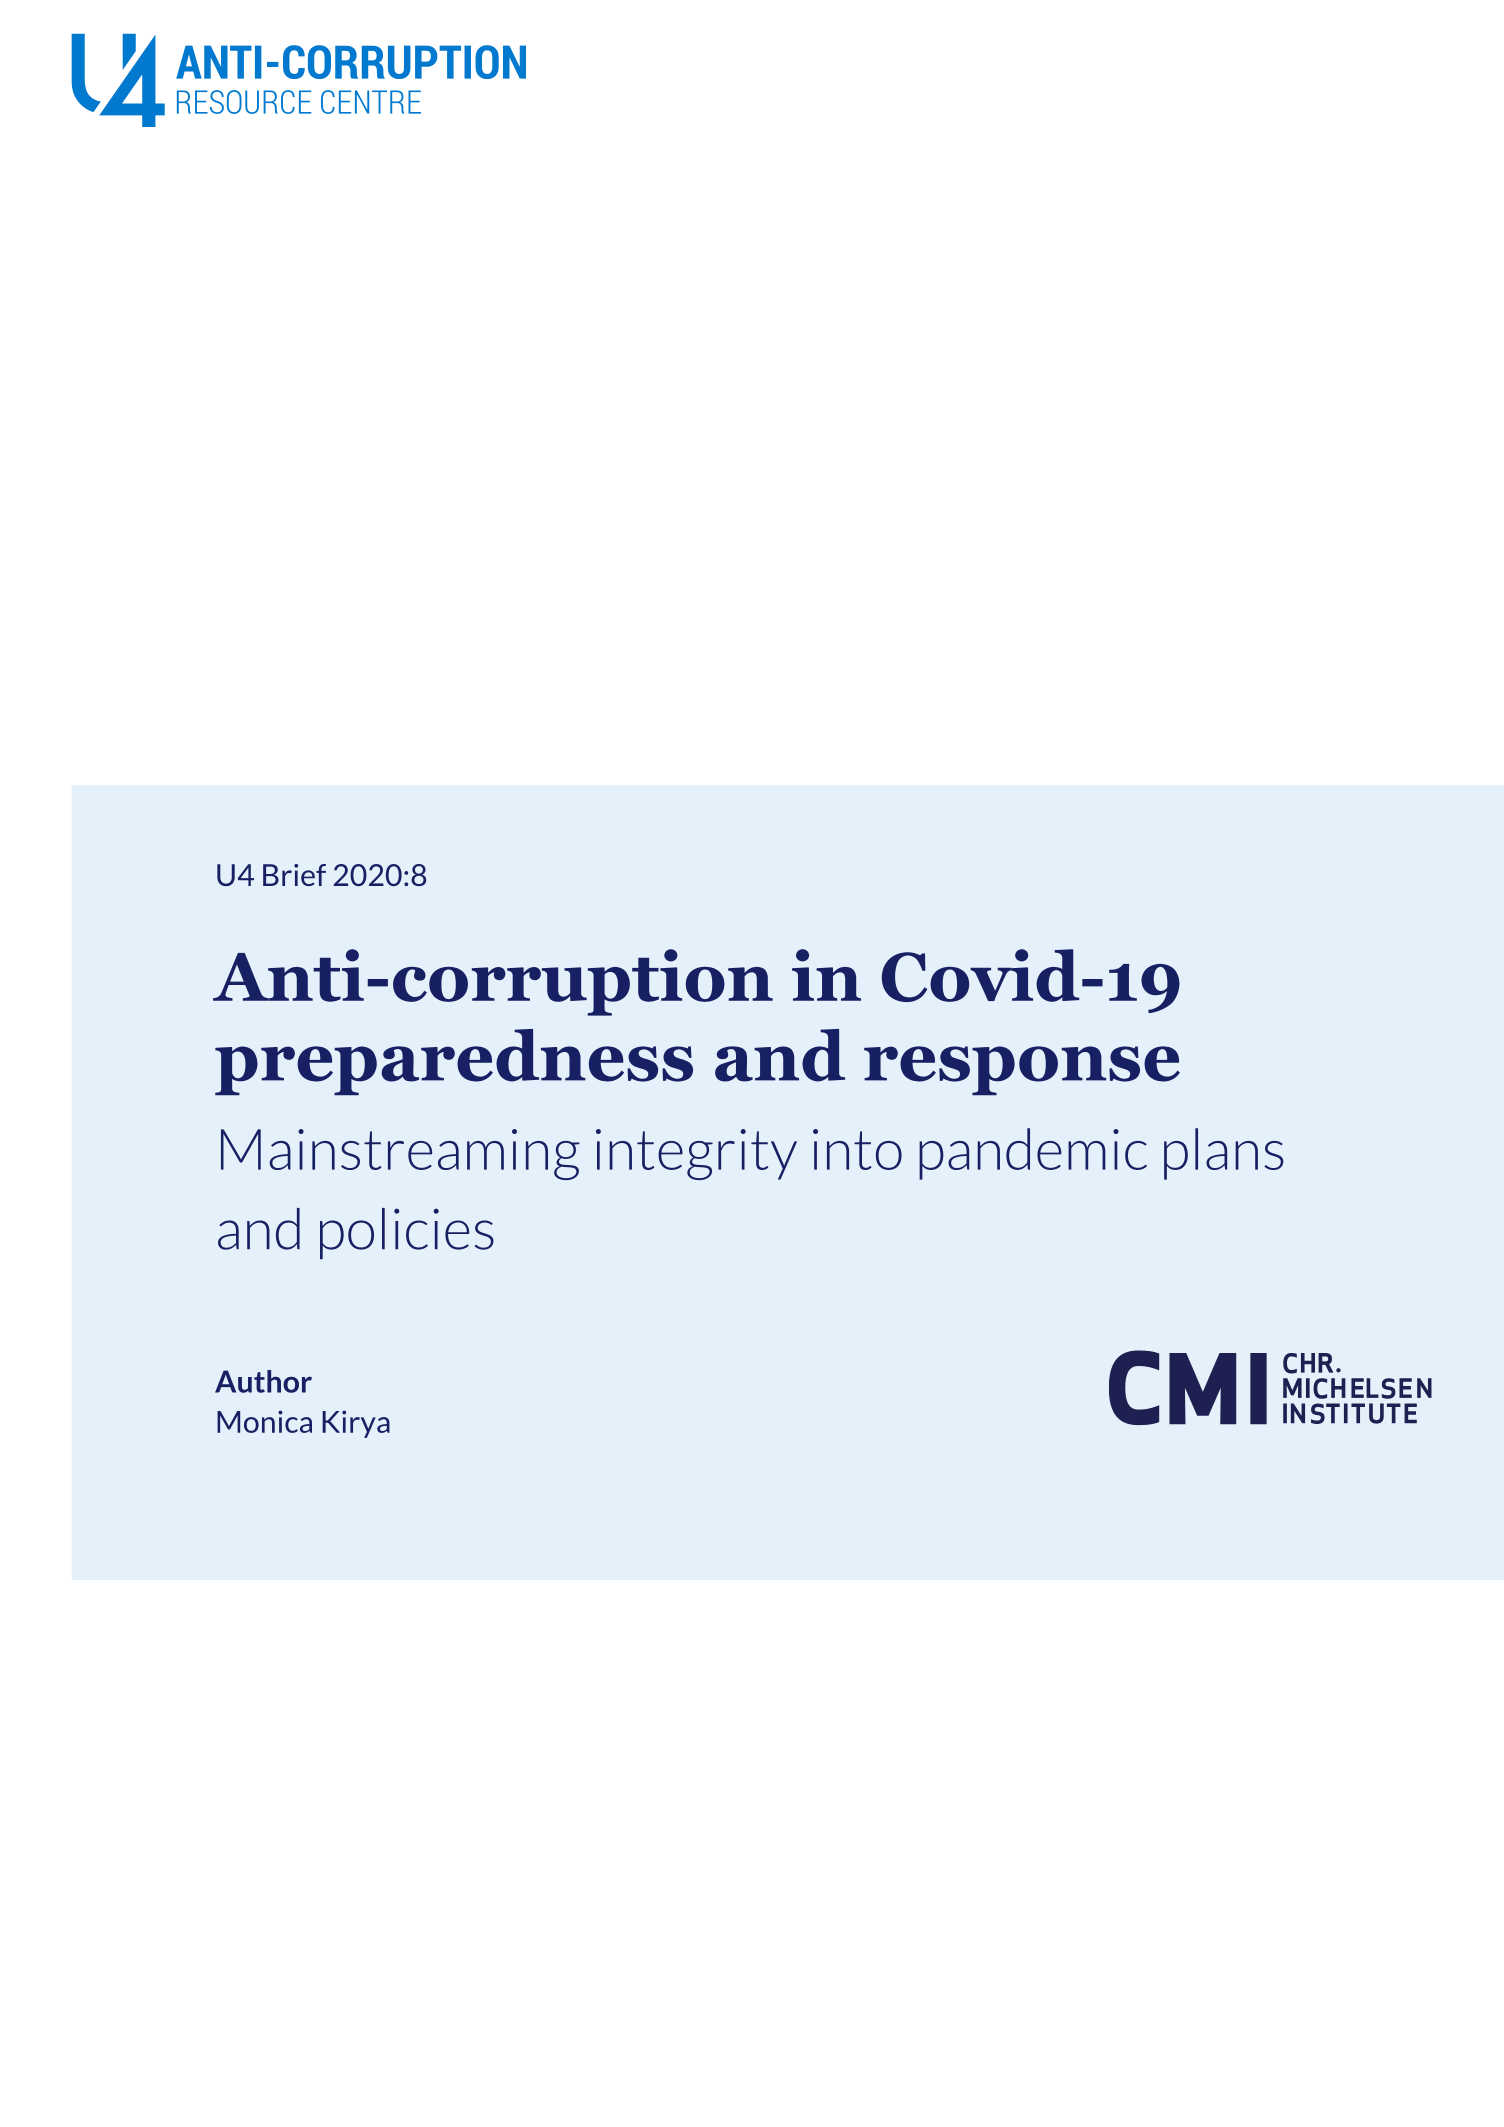 Anti-corruption in Covid-19 preparedness and response